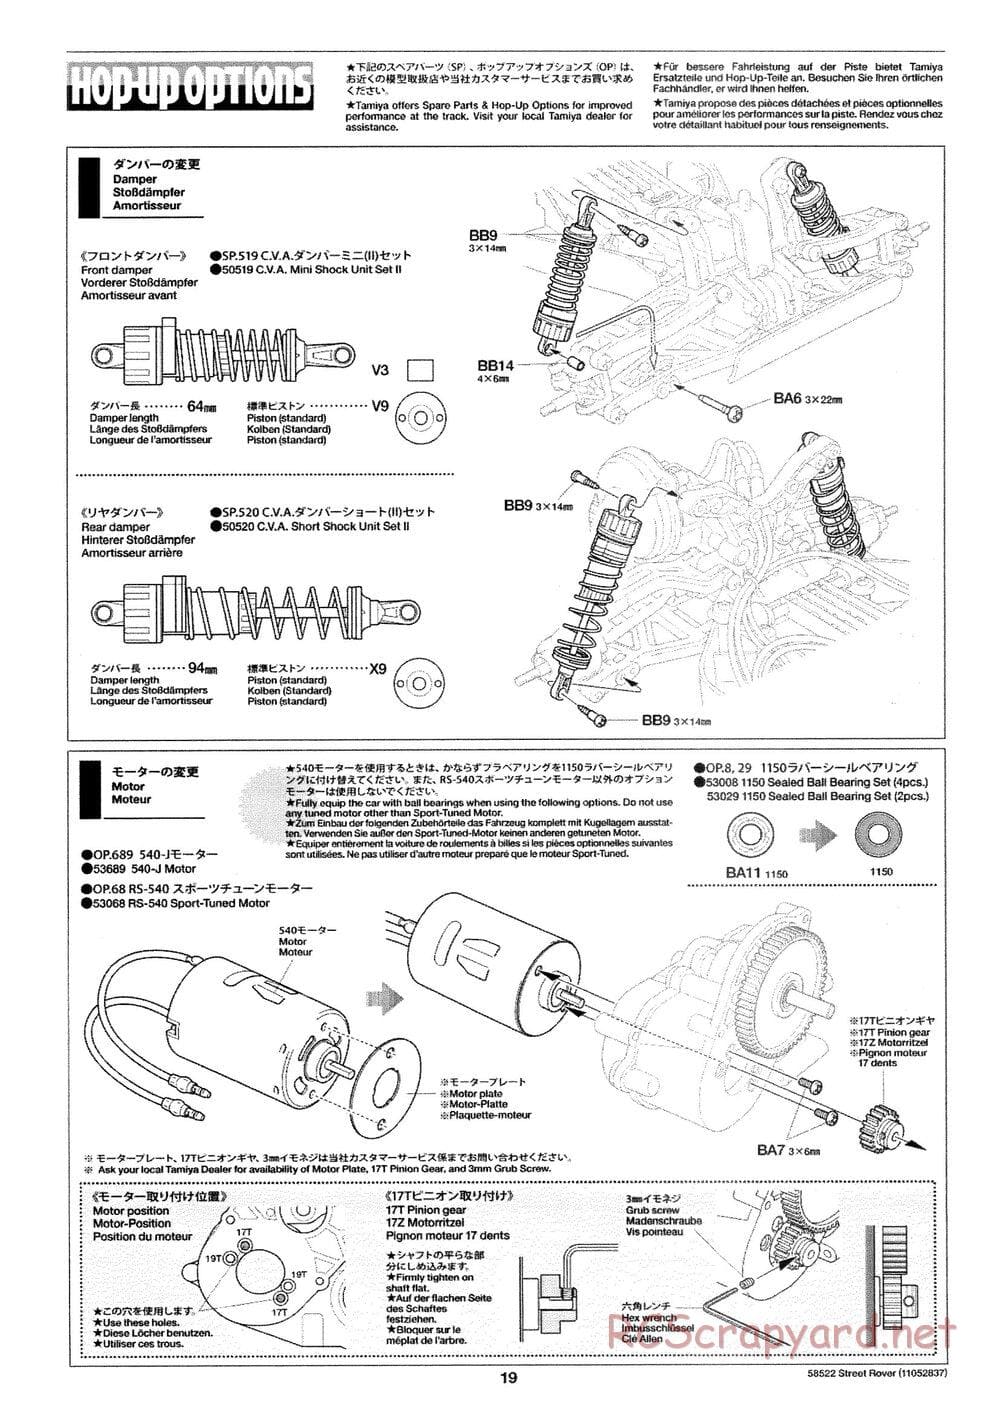 Tamiya - Street Rover Chassis - Manual - Page 20